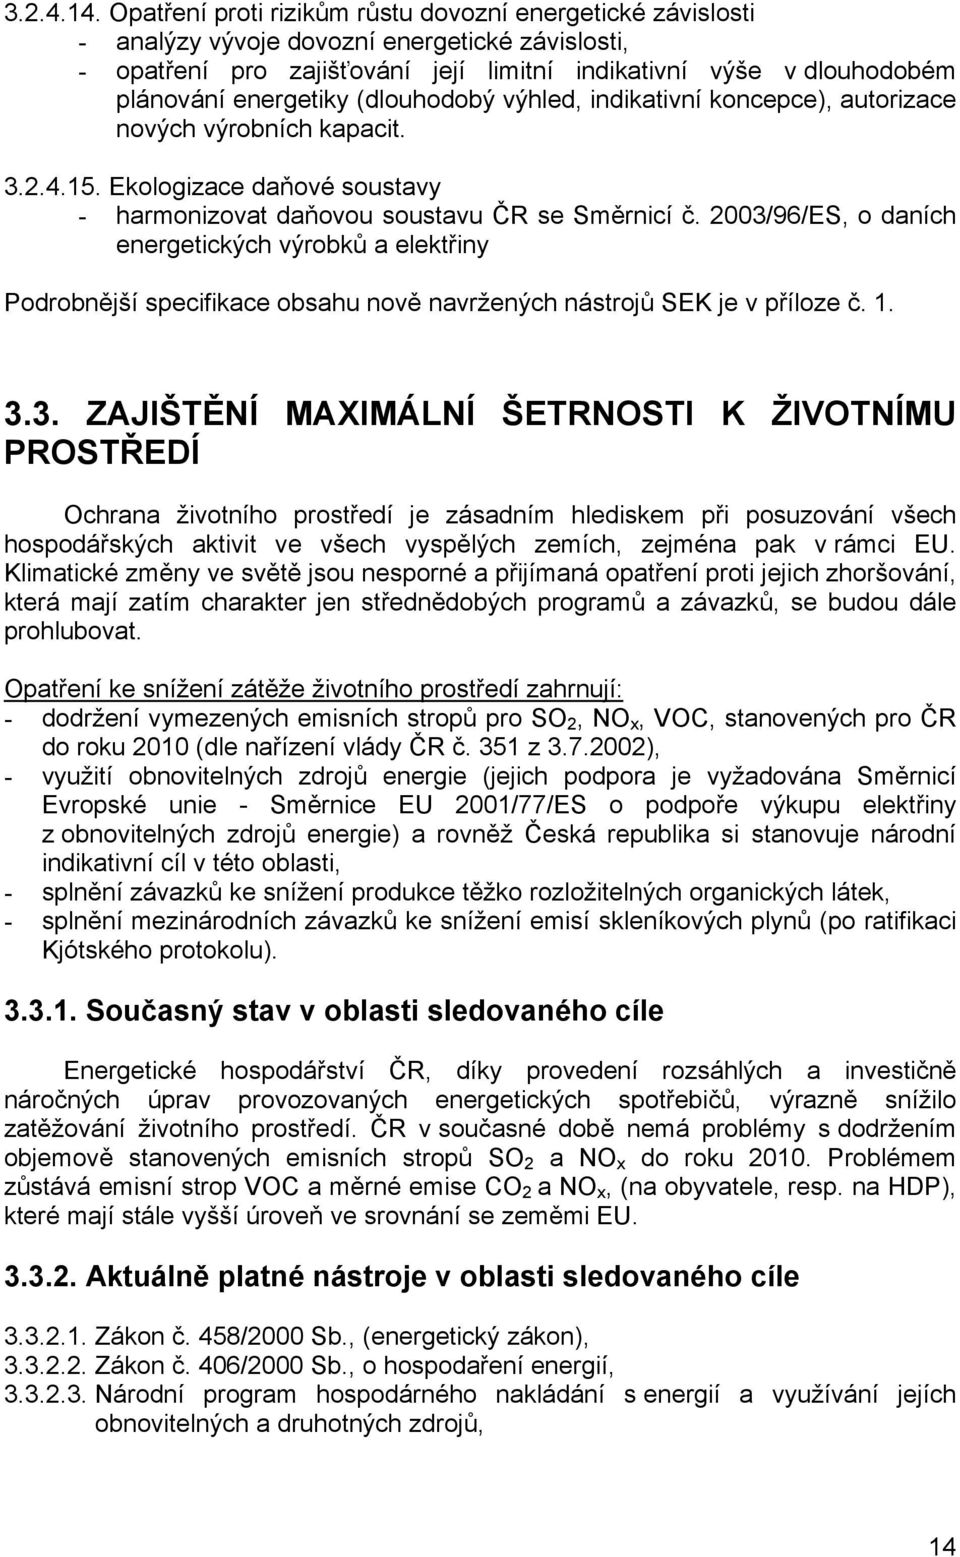 energetiky (dlouhodobý výhled, indikativní koncepce), autorizace nových výrobních kapacit. 3.2.4.15. Ekologizace daňové soustavy - harmonizovat daňovou soustavu ČR se Směrnicí č.